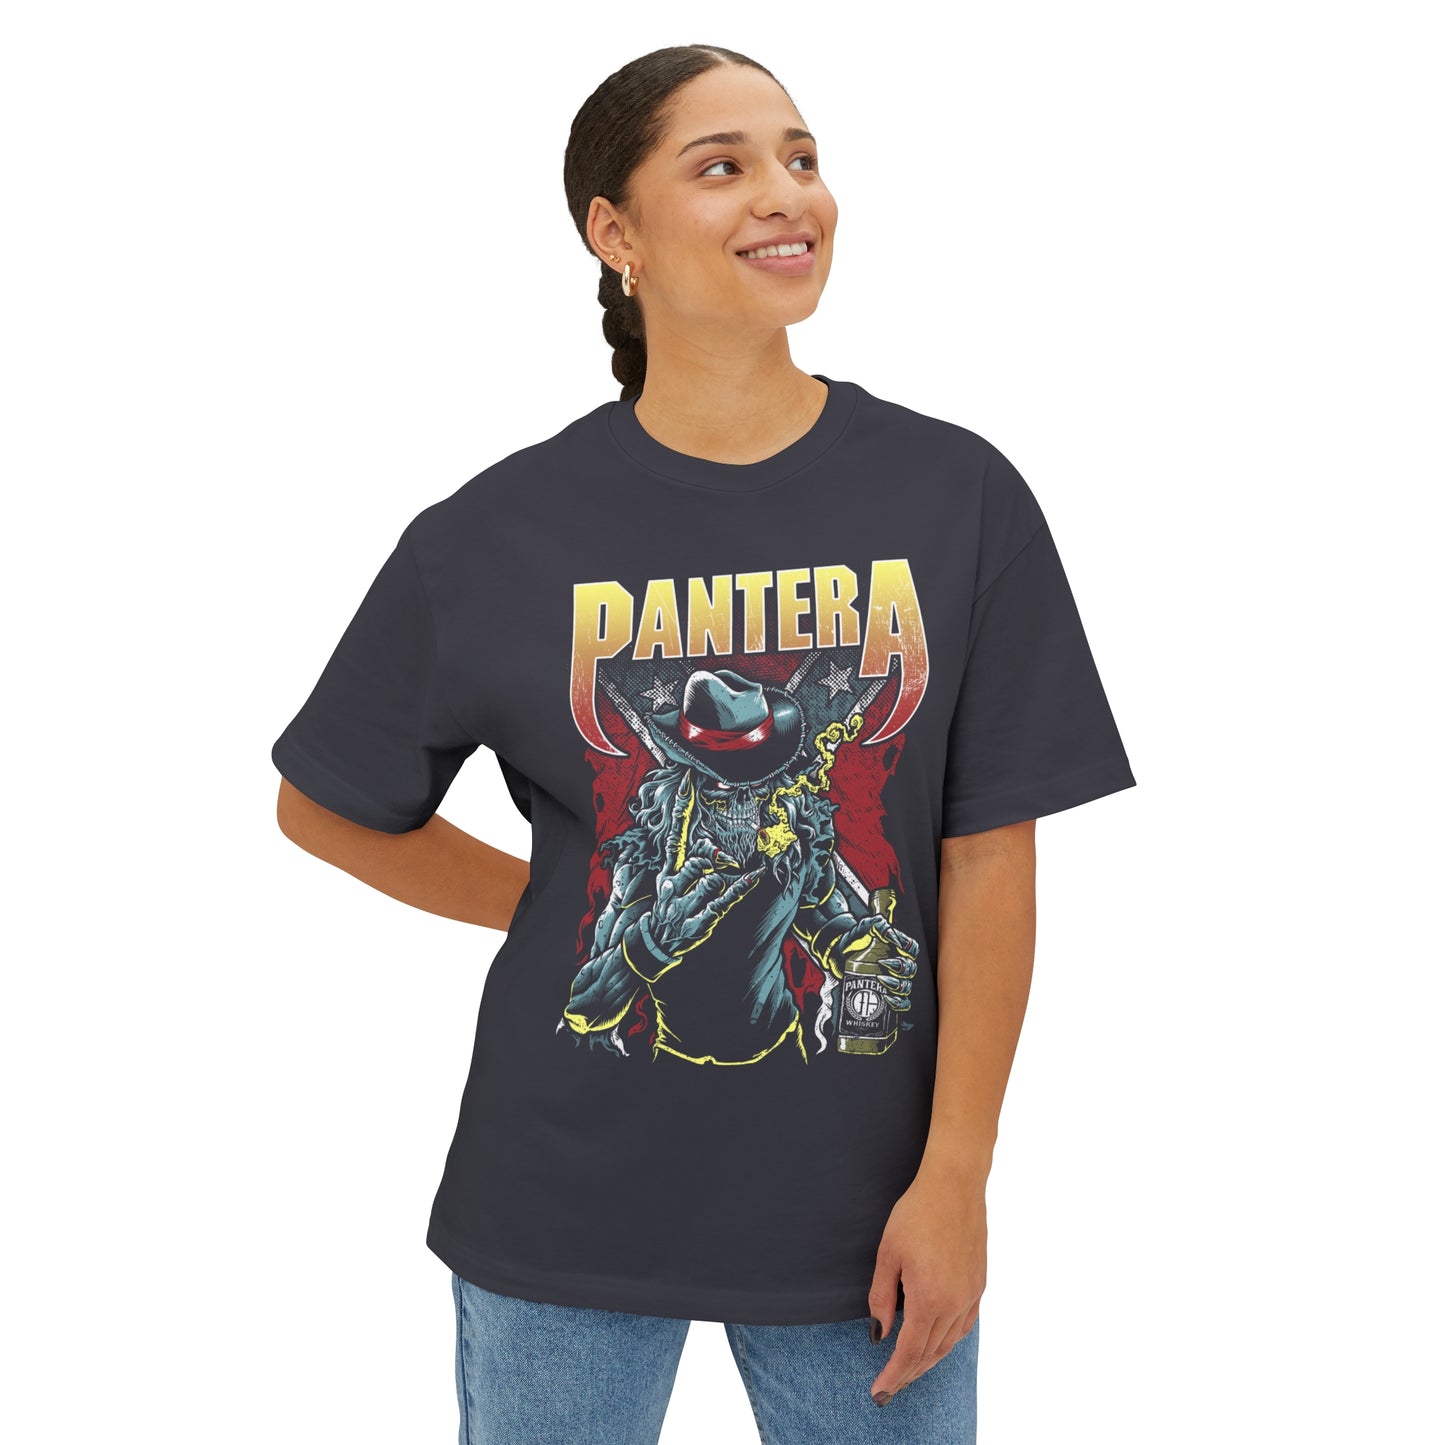 Pantera Oversized Tee